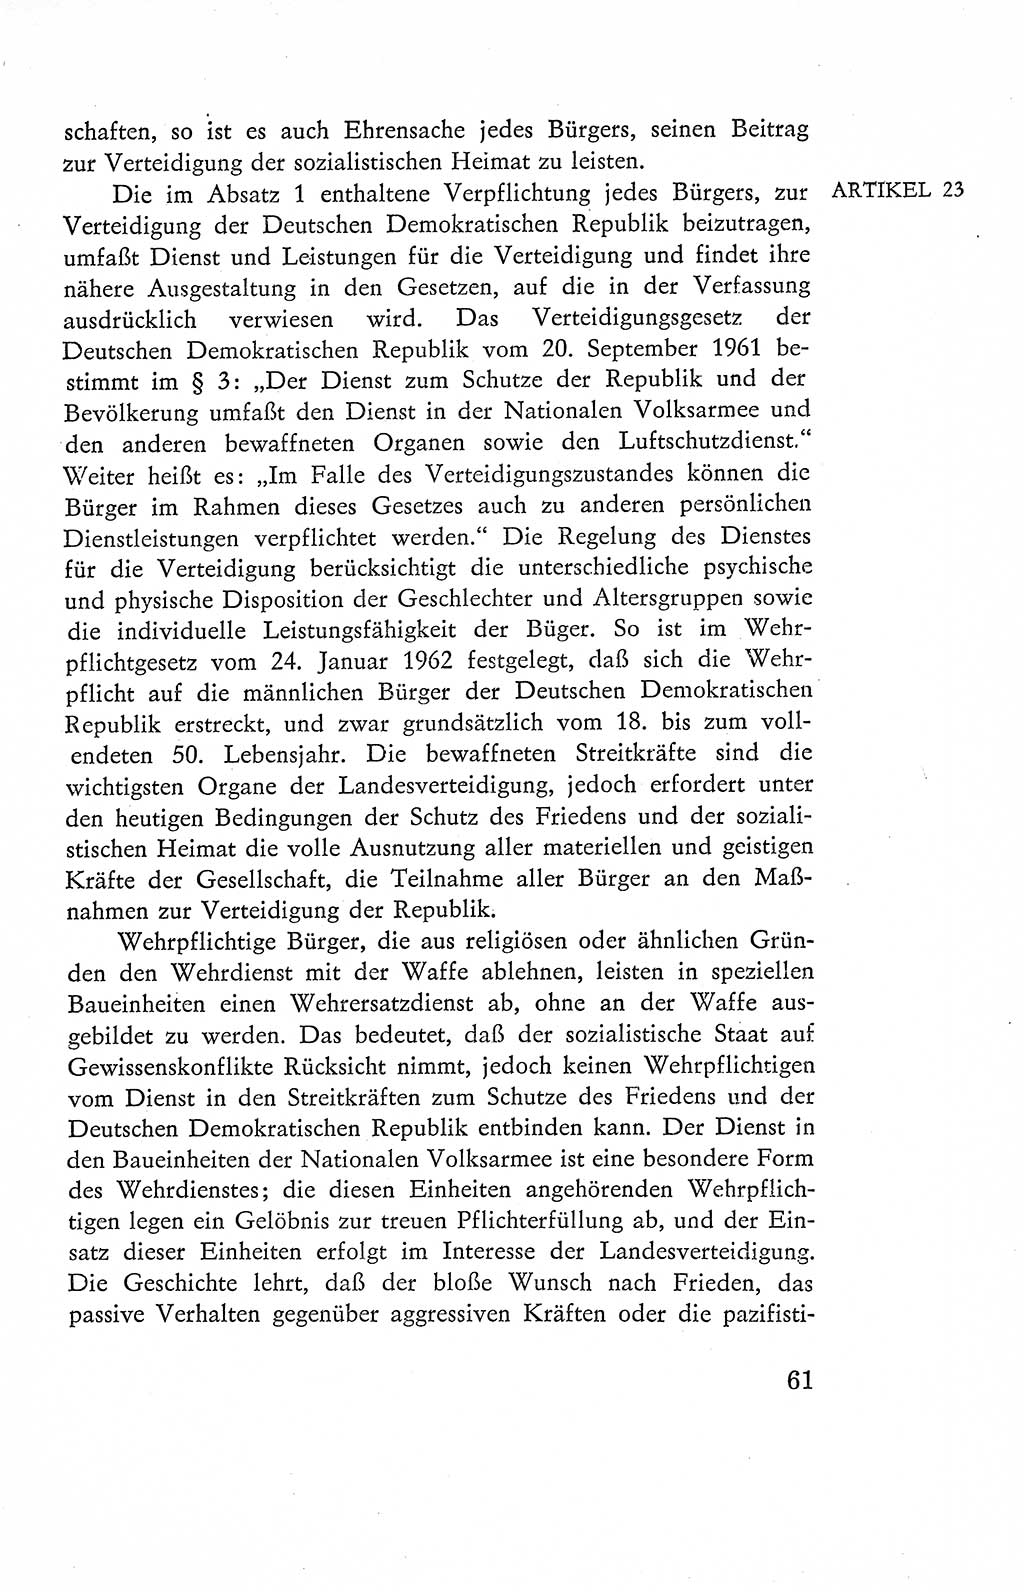 Verfassung der Deutschen Demokratischen Republik (DDR), Dokumente, Kommentar 1969, Band 2, Seite 61 (Verf. DDR Dok. Komm. 1969, Bd. 2, S. 61)